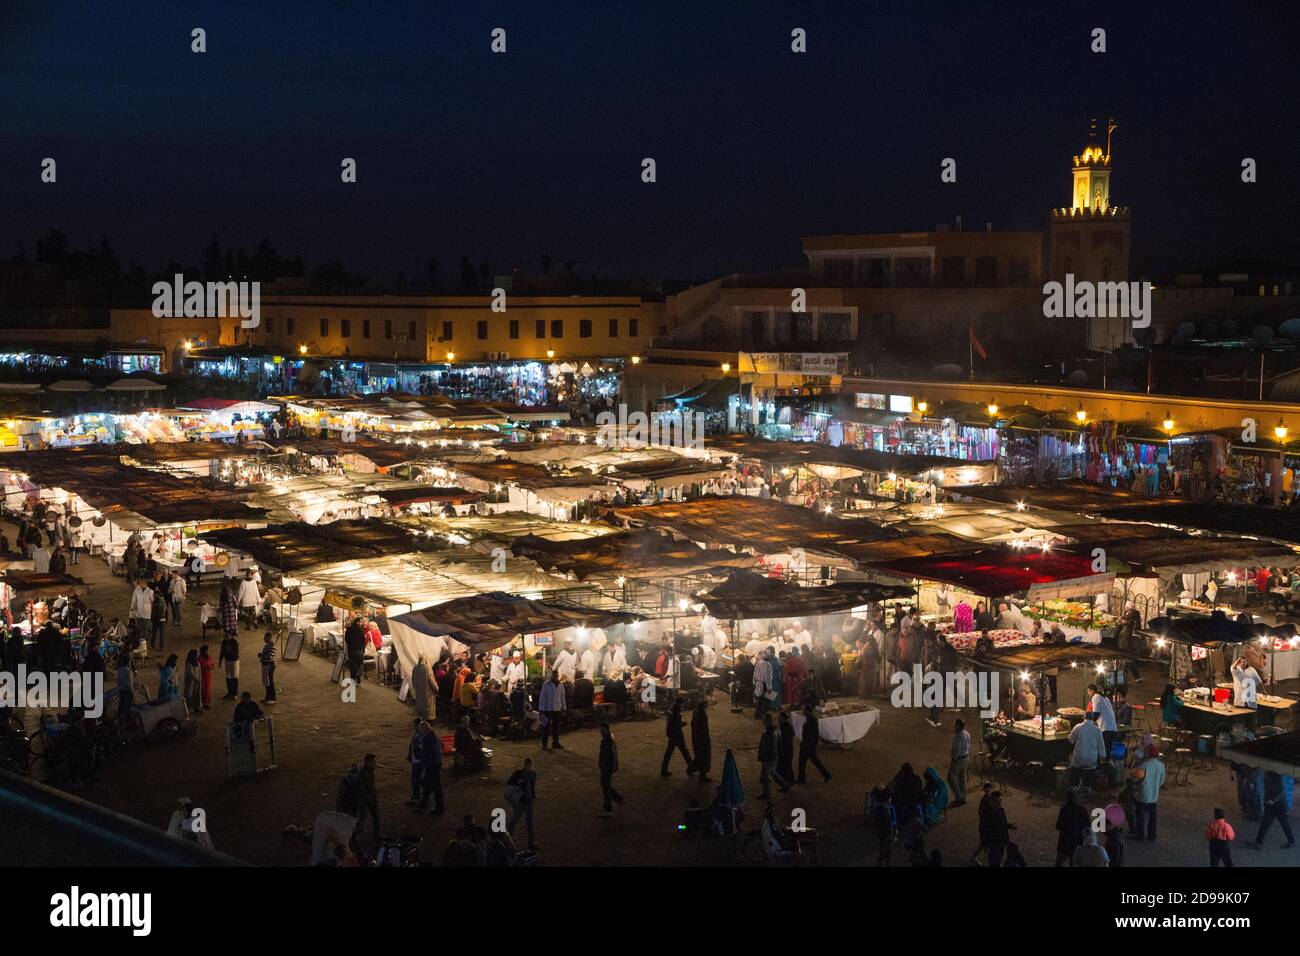 Bancarelle di cibo a Jemaa el Fna, la piazza del mercato di Marrakech, Marocco. Foto Stock